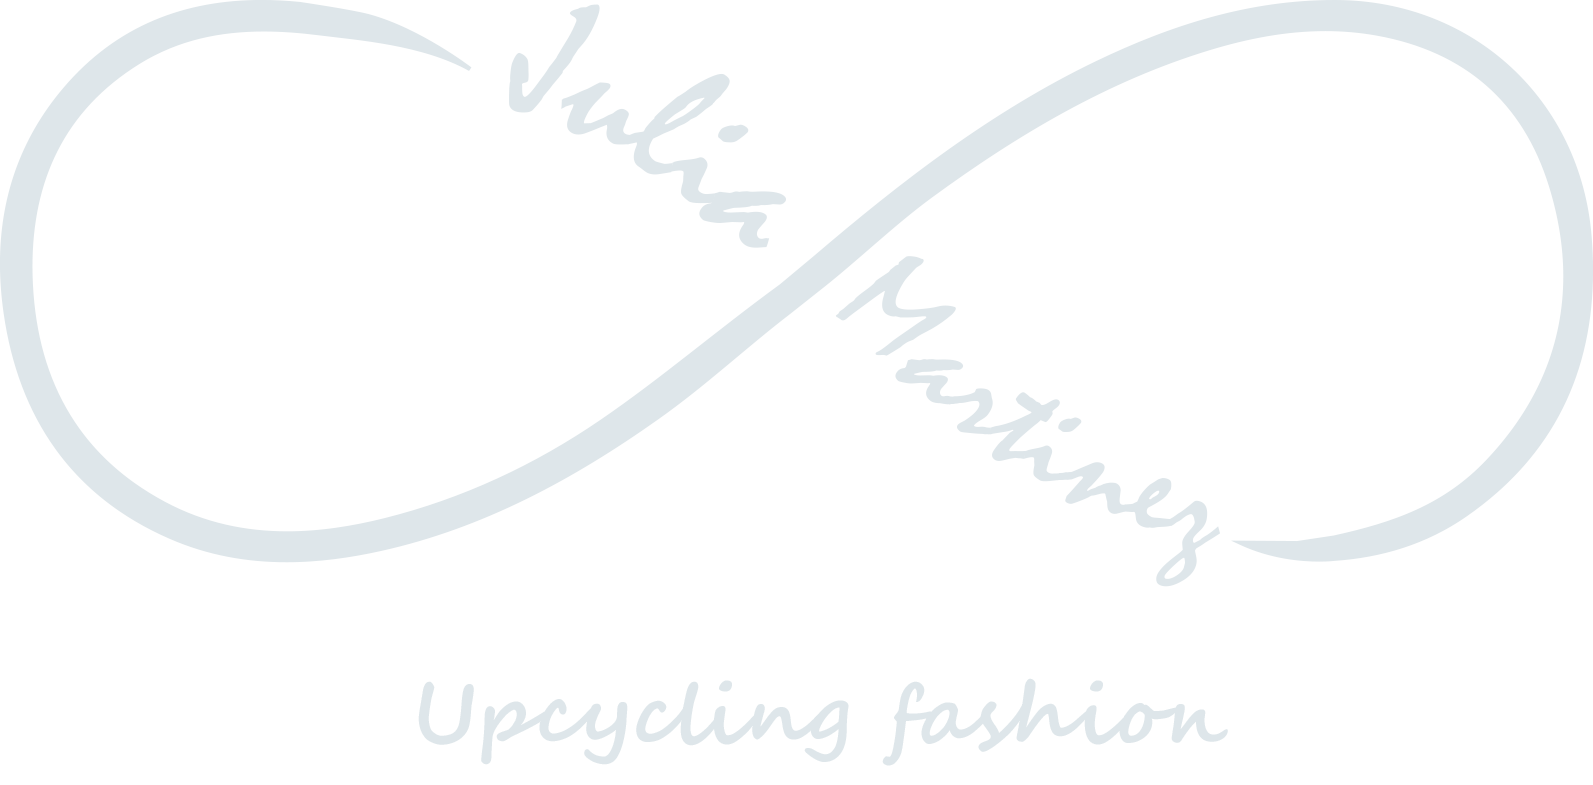 Julia Martínez – Upcycling Fashion